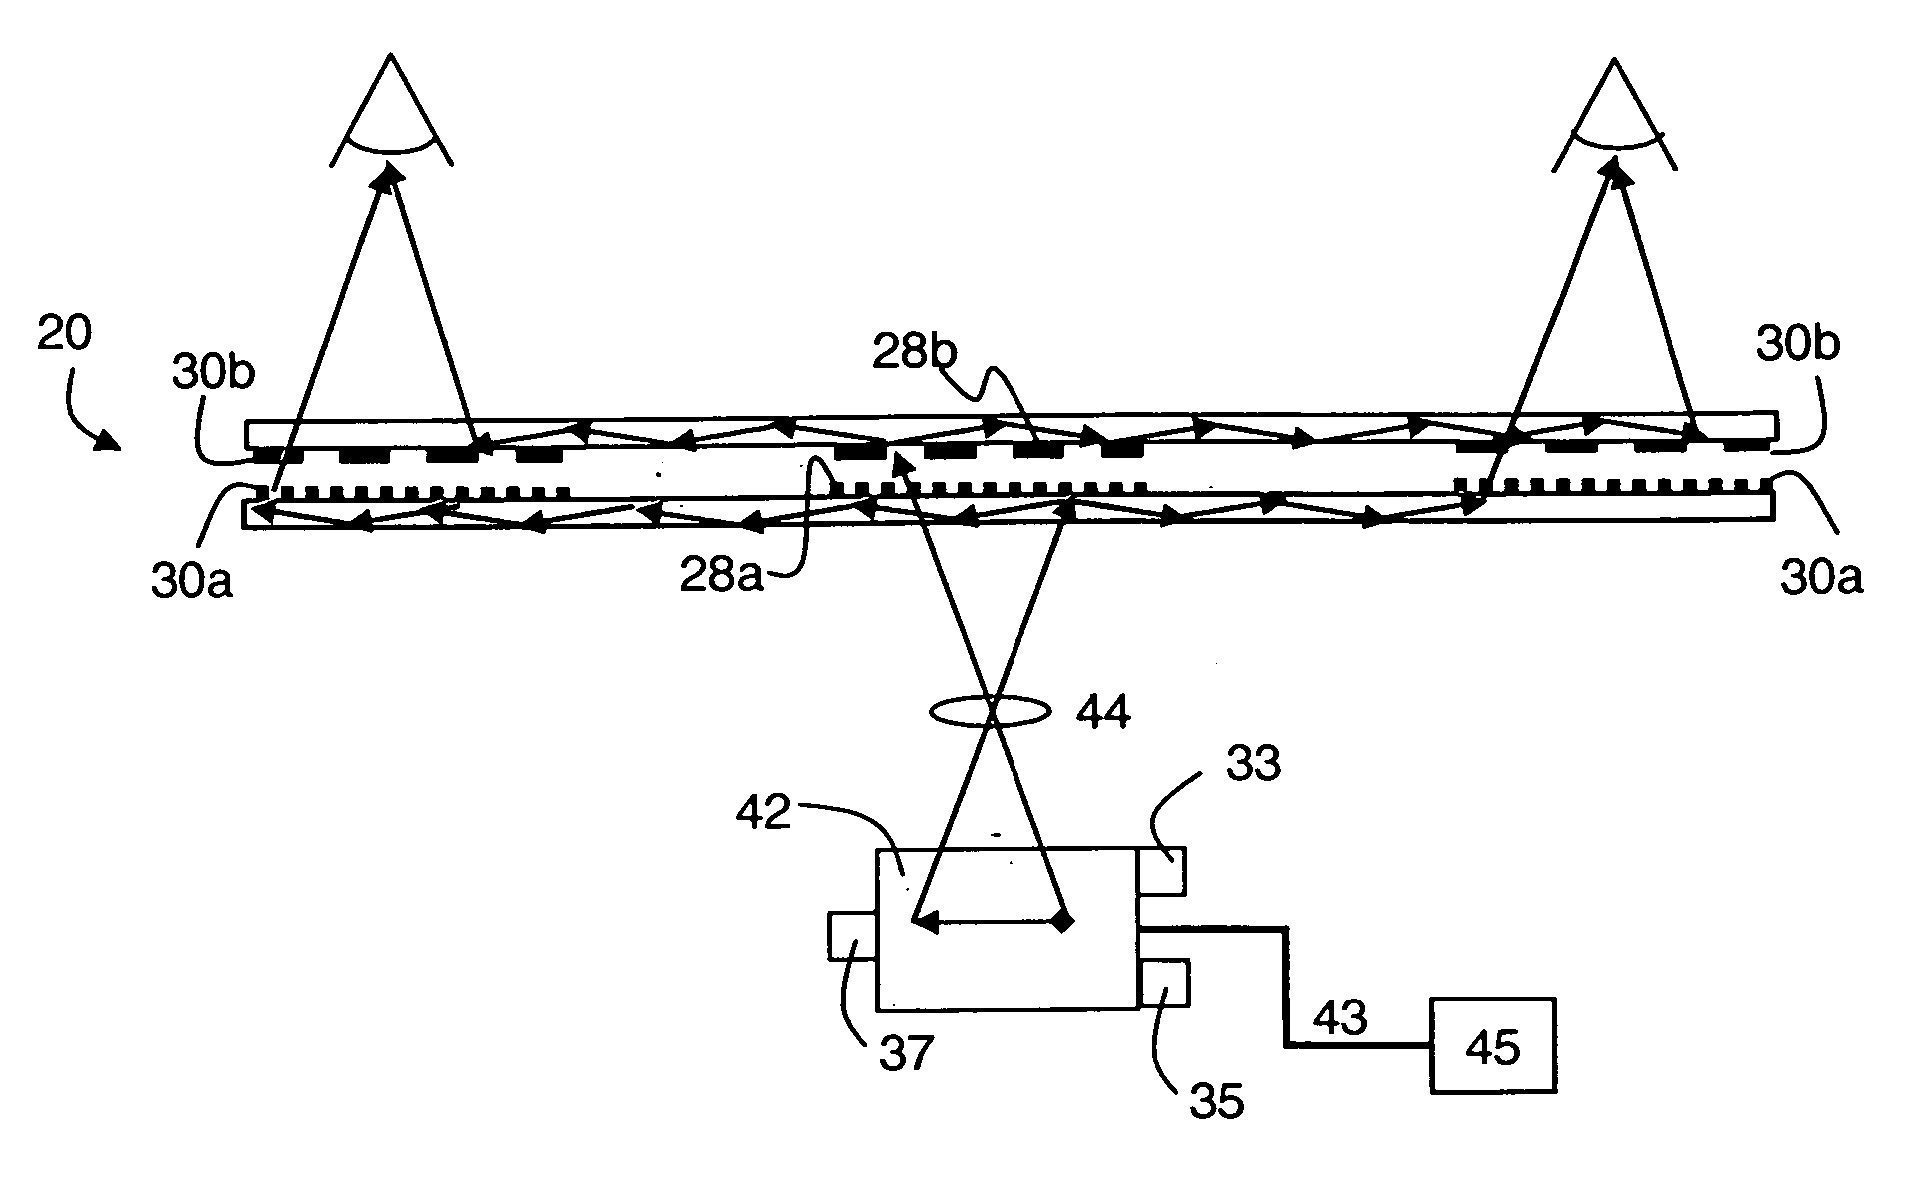 Multi-plane optical apparatus